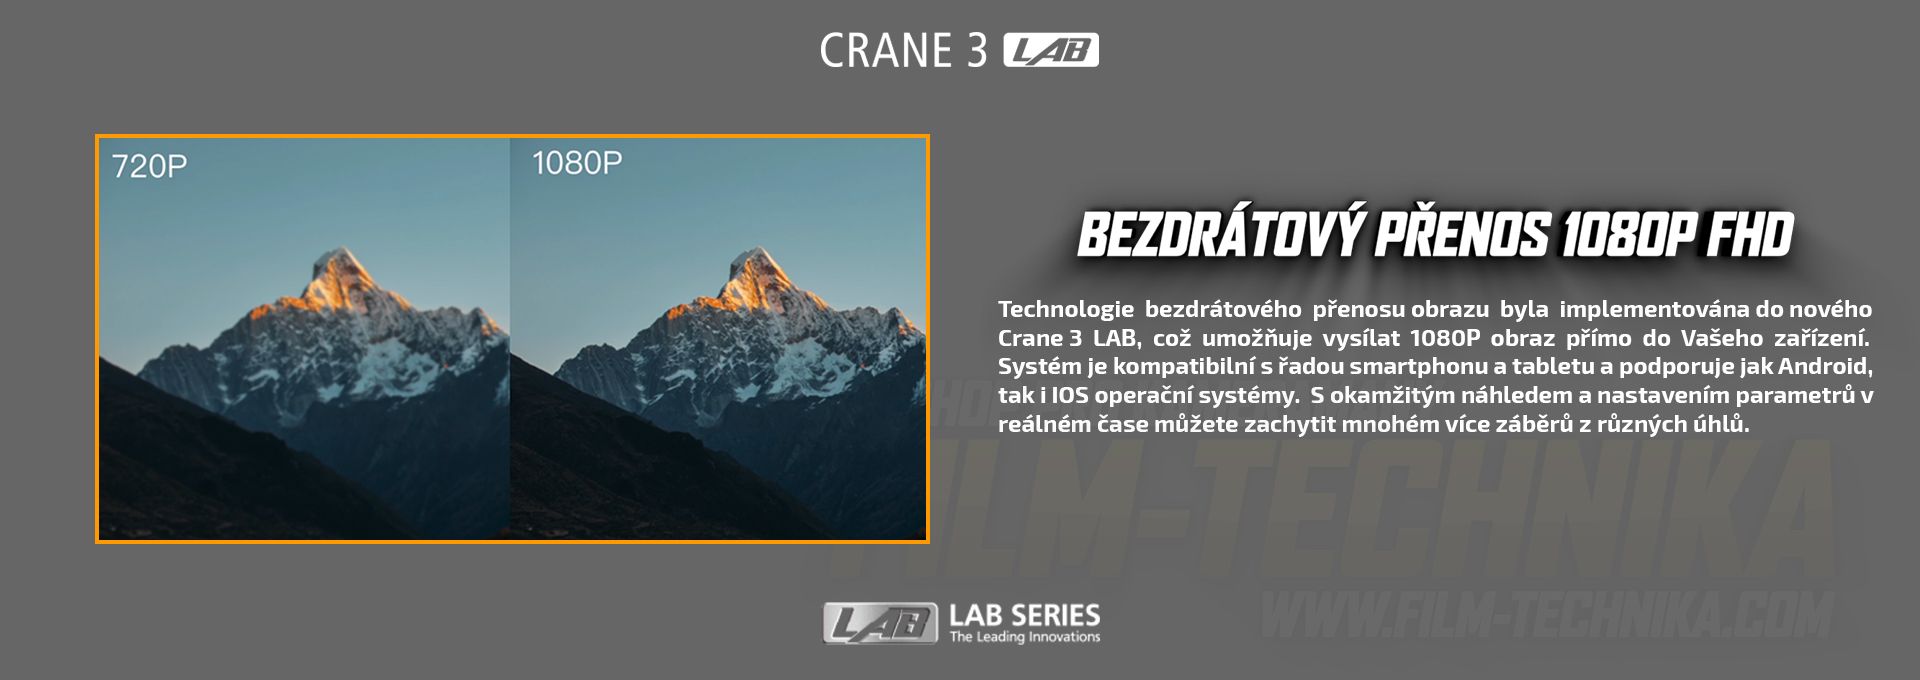 film-technika-zhiyun-crane3-lab-intext10